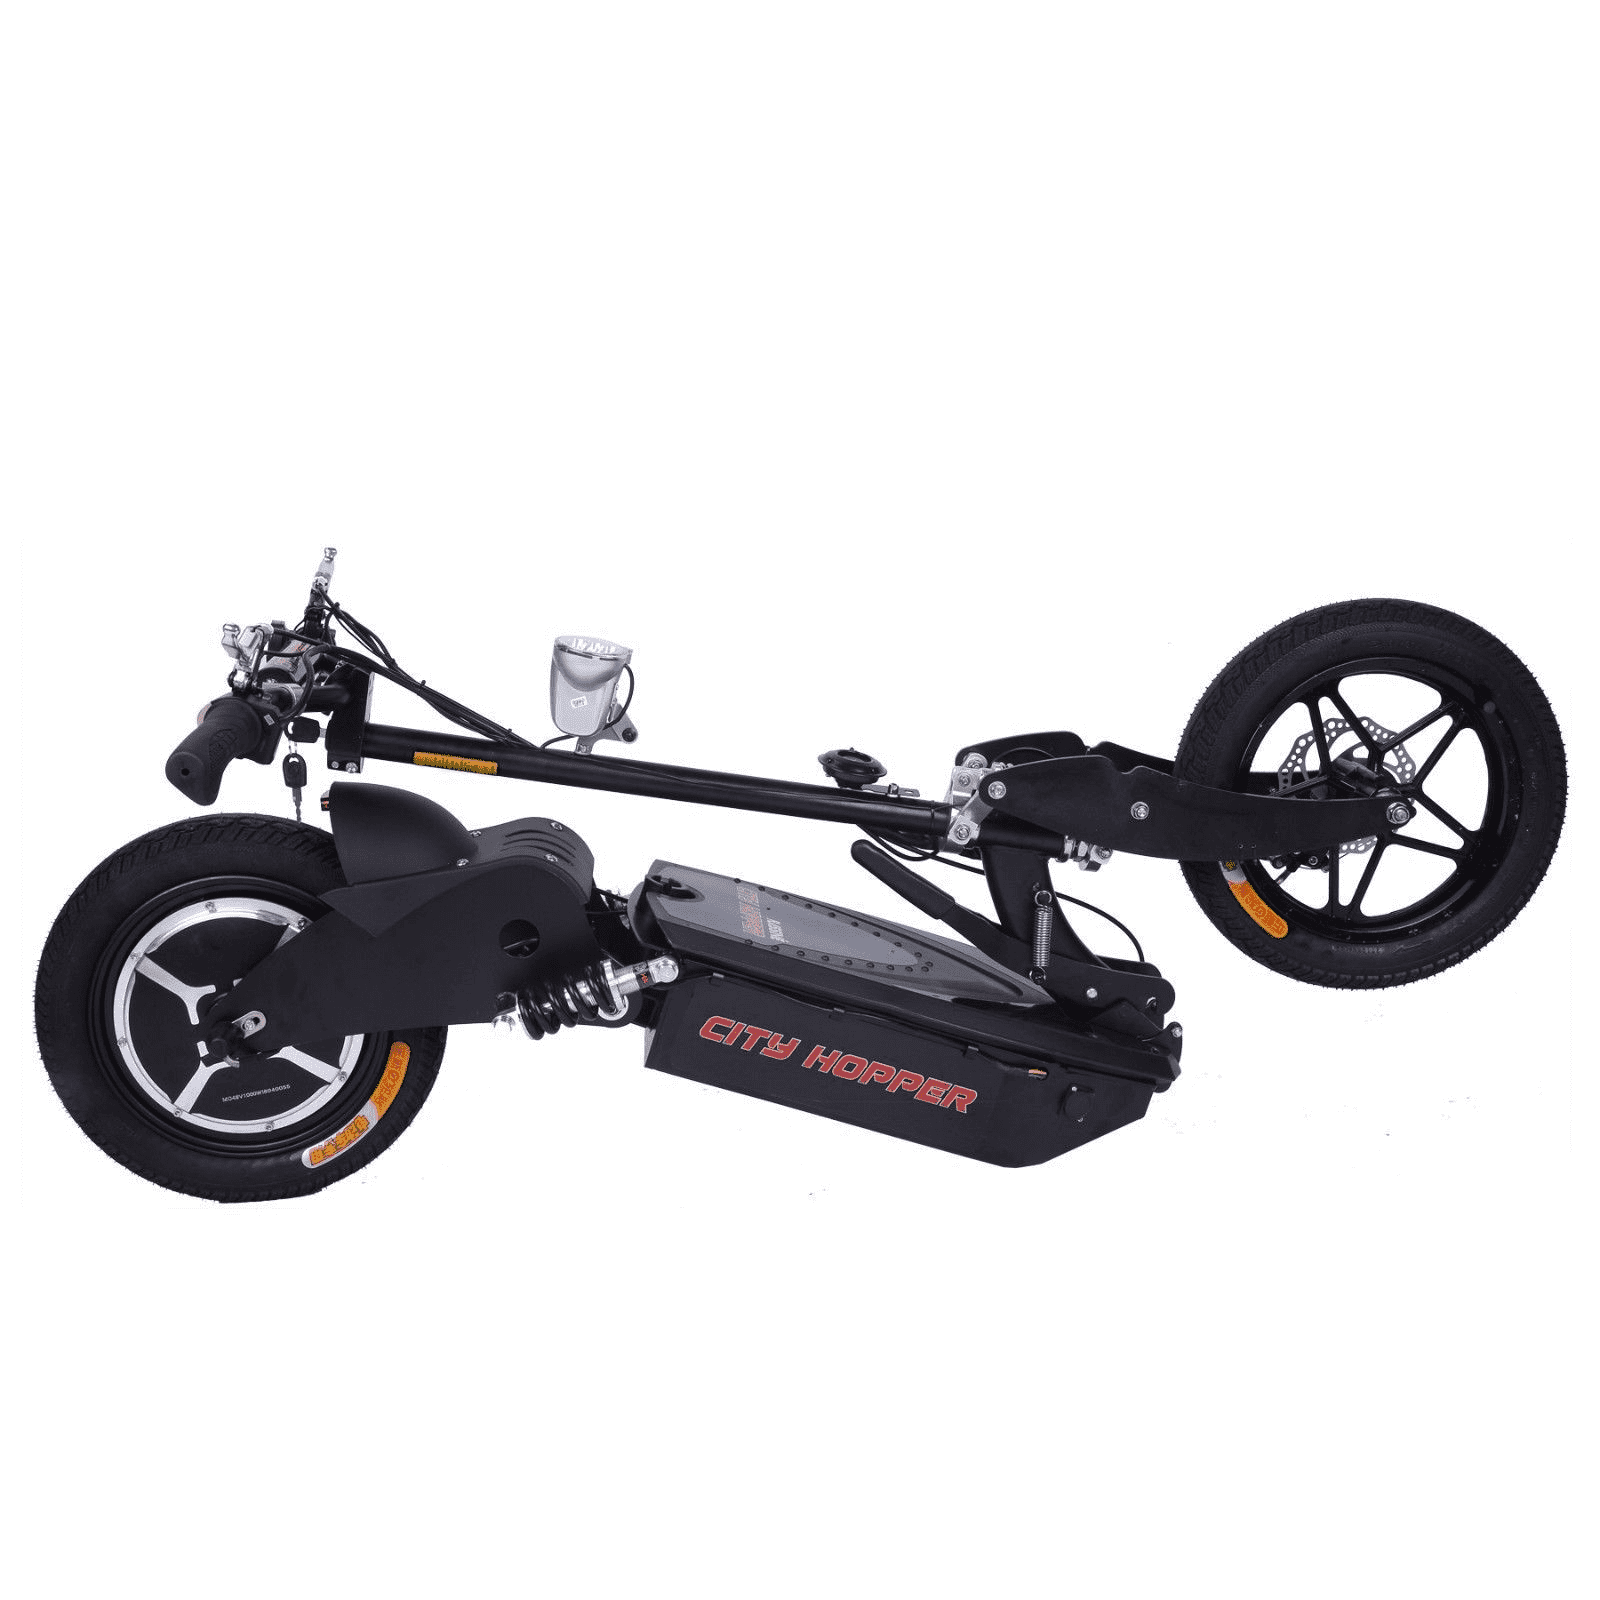 Bikerassine City Hopper Super Turbo 1000W Electric Scooter